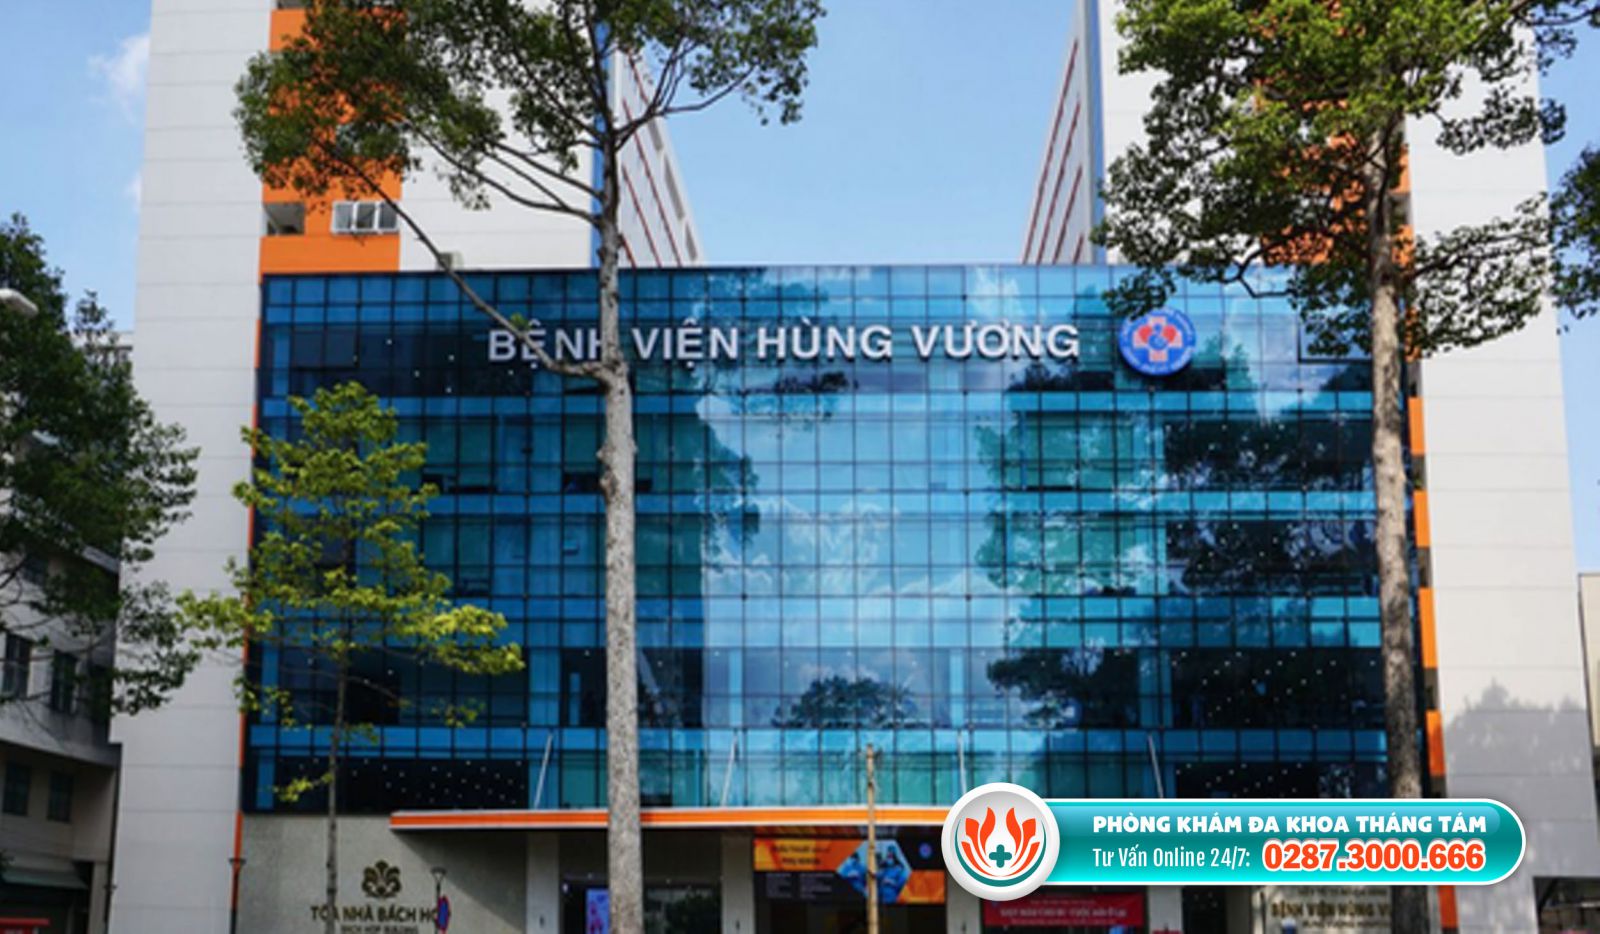 Bệnh viện Hùng Vương là địa chỉ phá thai chính quy ở TPHCM